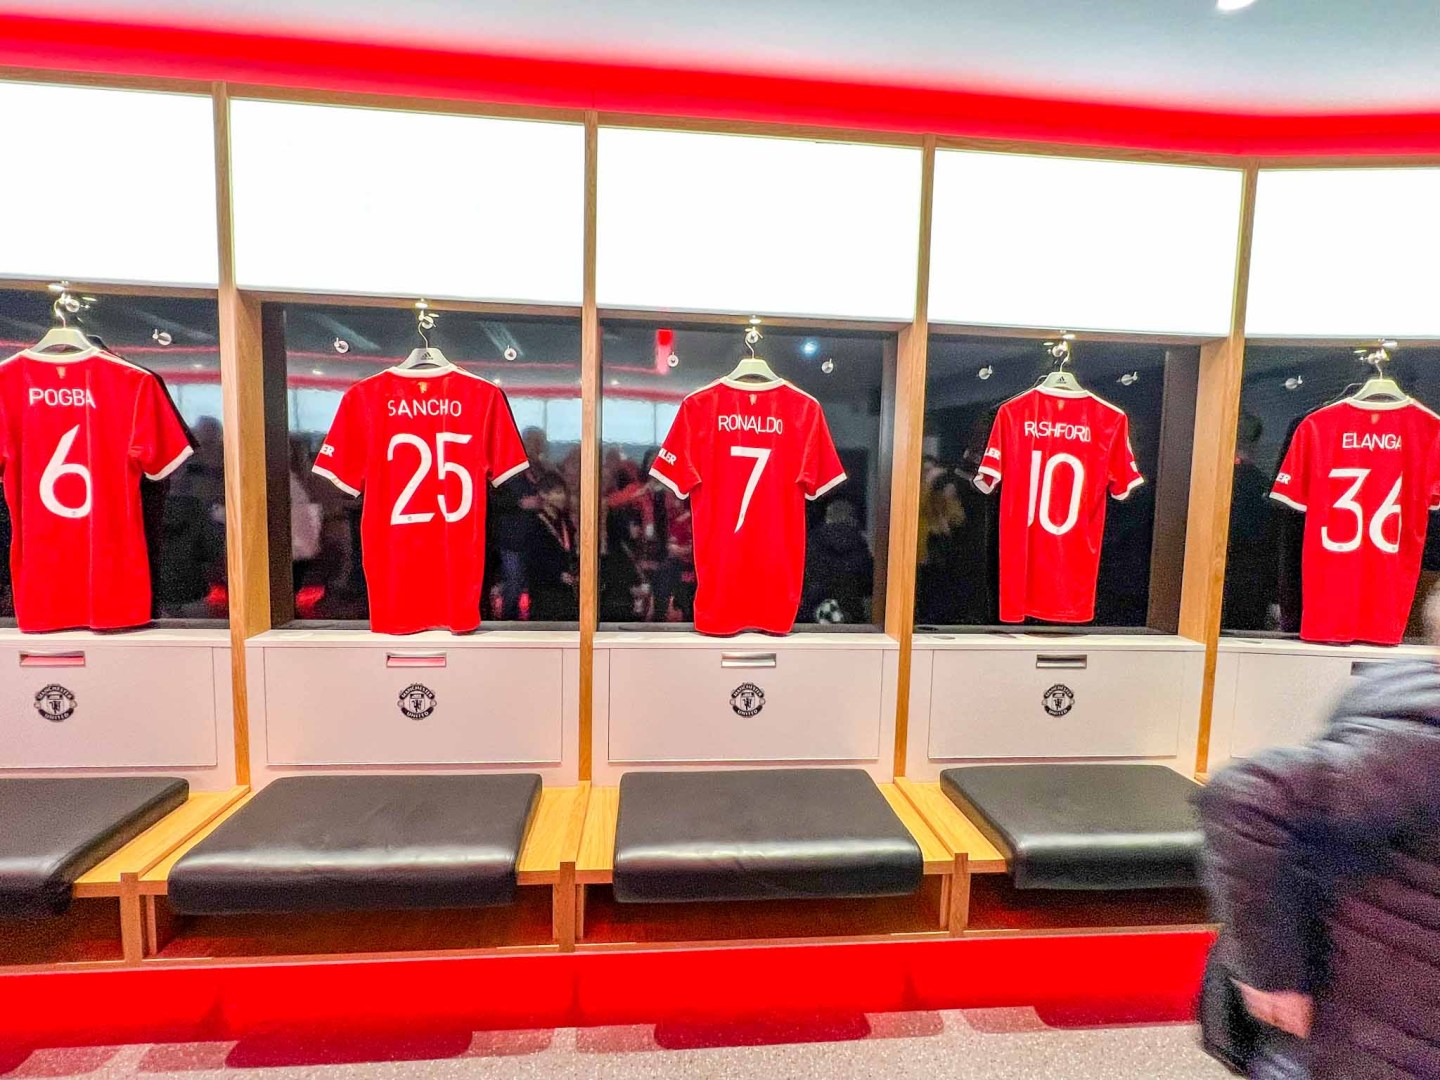 Tour del estadio del Manchester United, camisetas de los jugadores en el vestuario